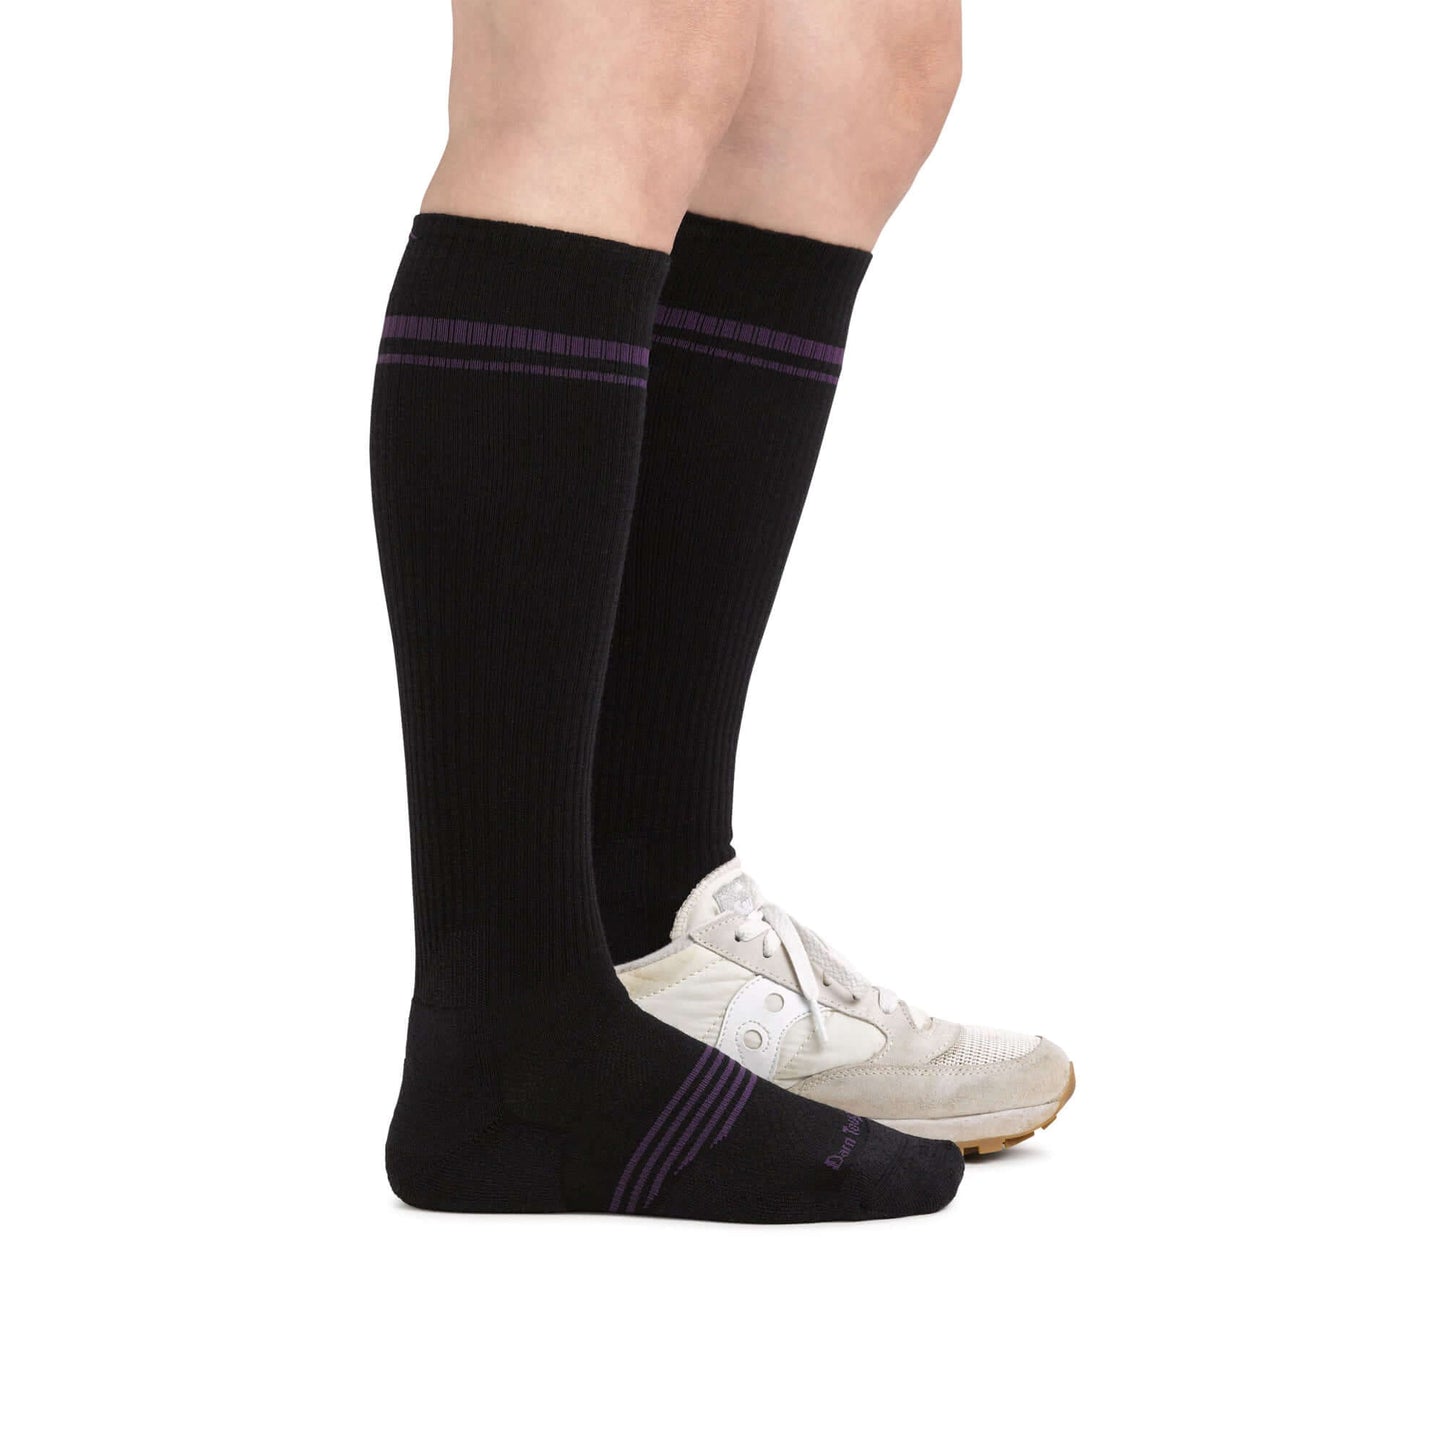 Darn Tough Calcetín por debajo de la rodilla con acolchado para cualquier actividad física. Mod. Element 1109 color Color: Black